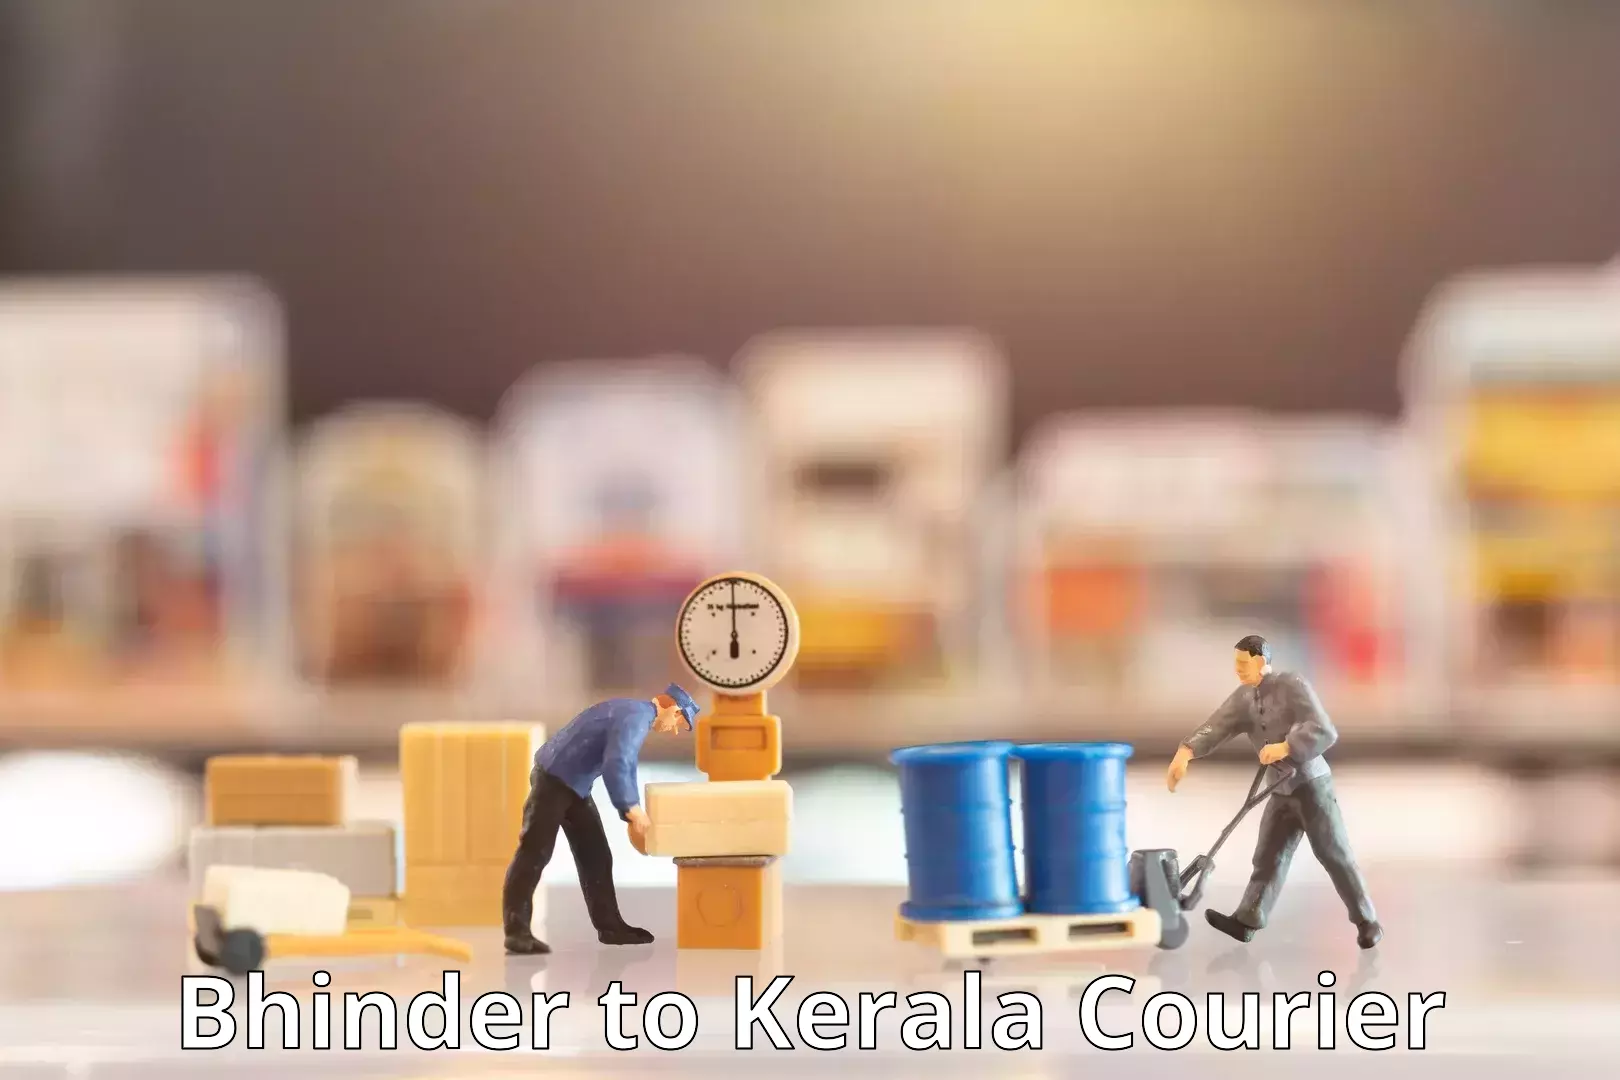 Affordable shipping rates Bhinder to Kerala